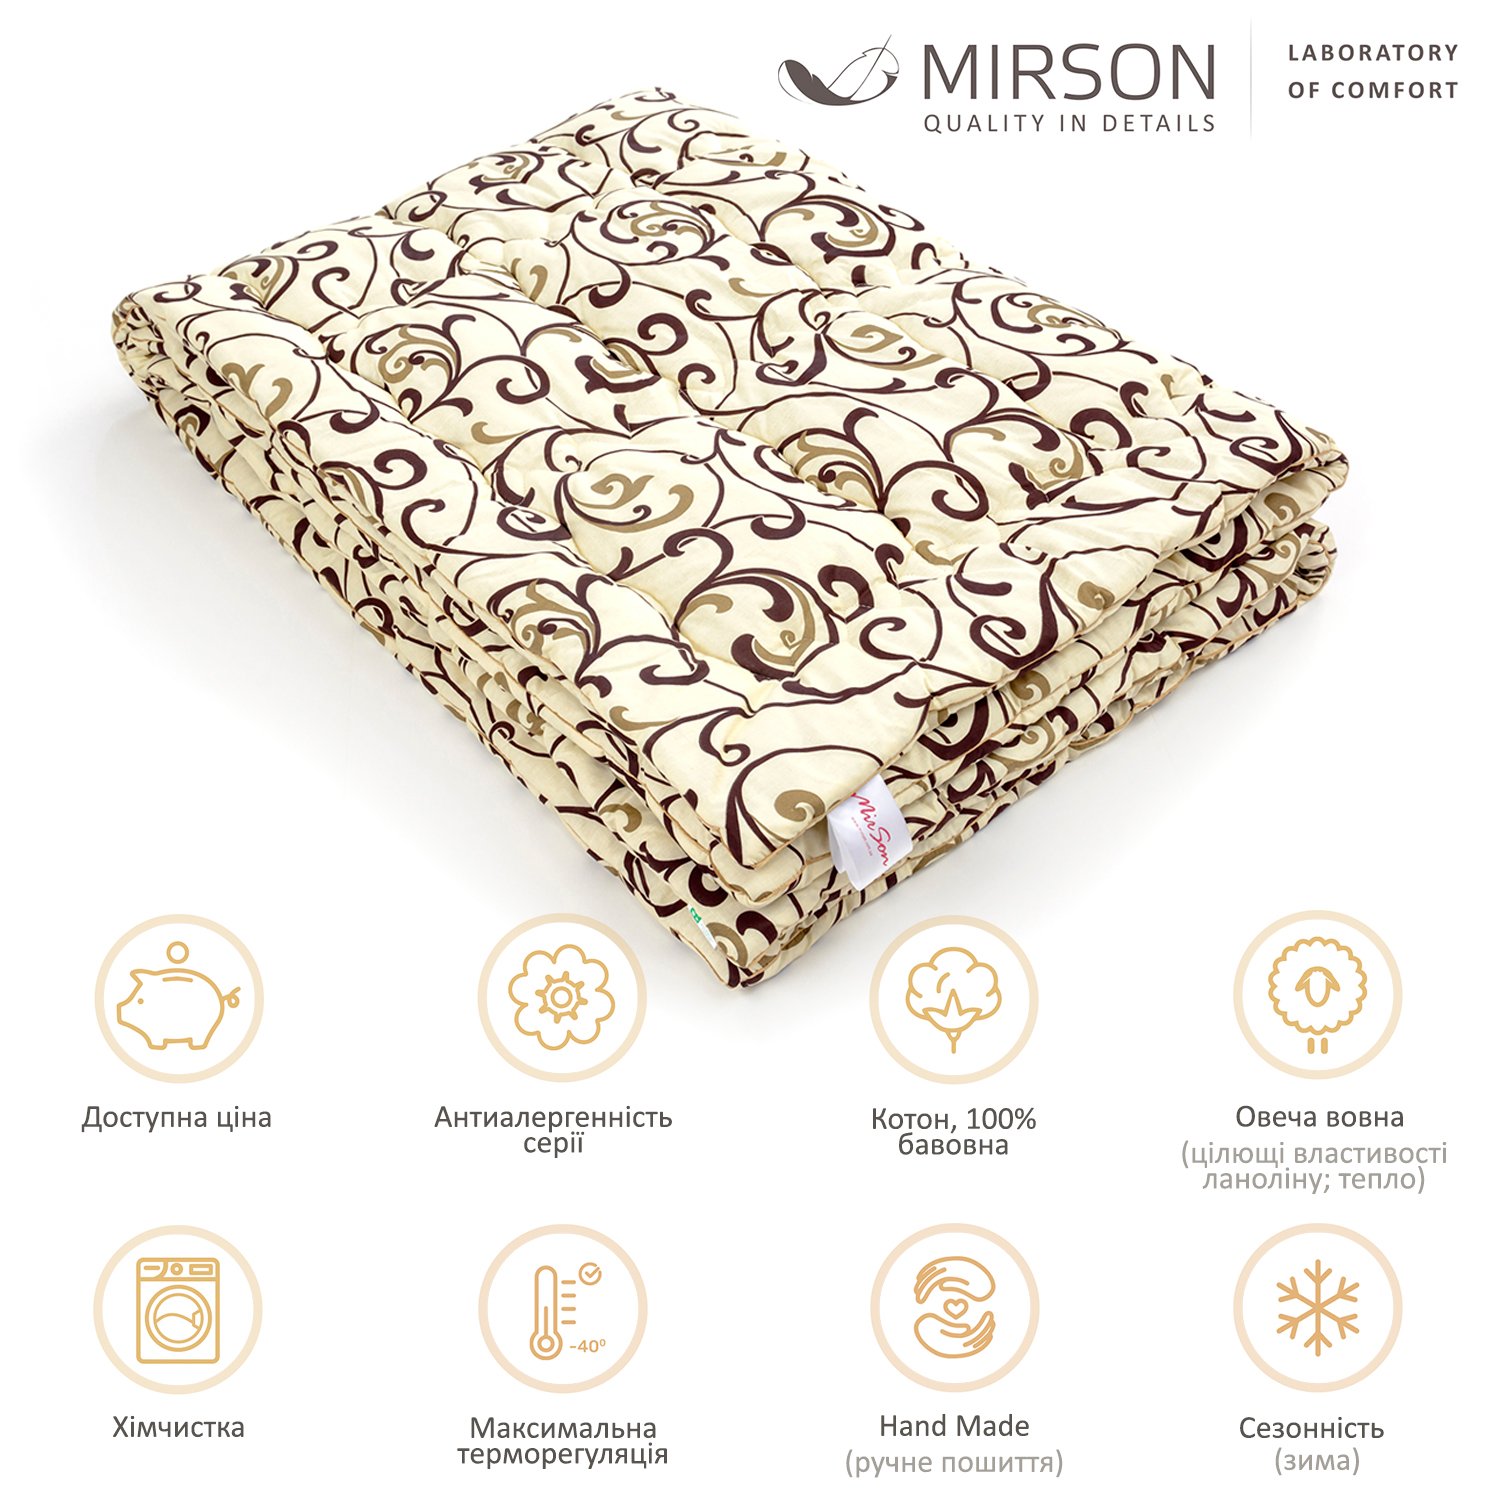 Одеяло шерстяное MirSon Hand Made №163, зимнее, 200x220 см, бежевое с узором - фото 5